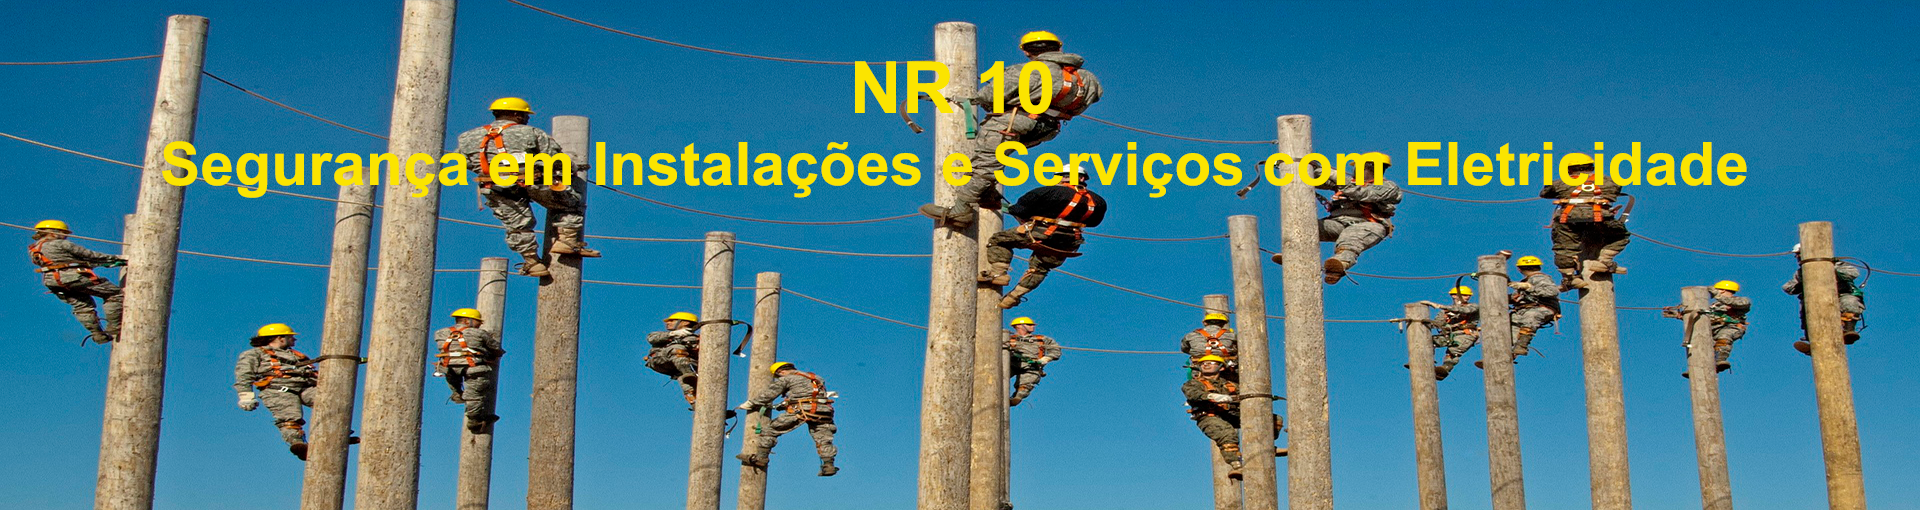 NR 10 - Segurança em Instalações e Serviços com Eletricidade - RECICLAGEM